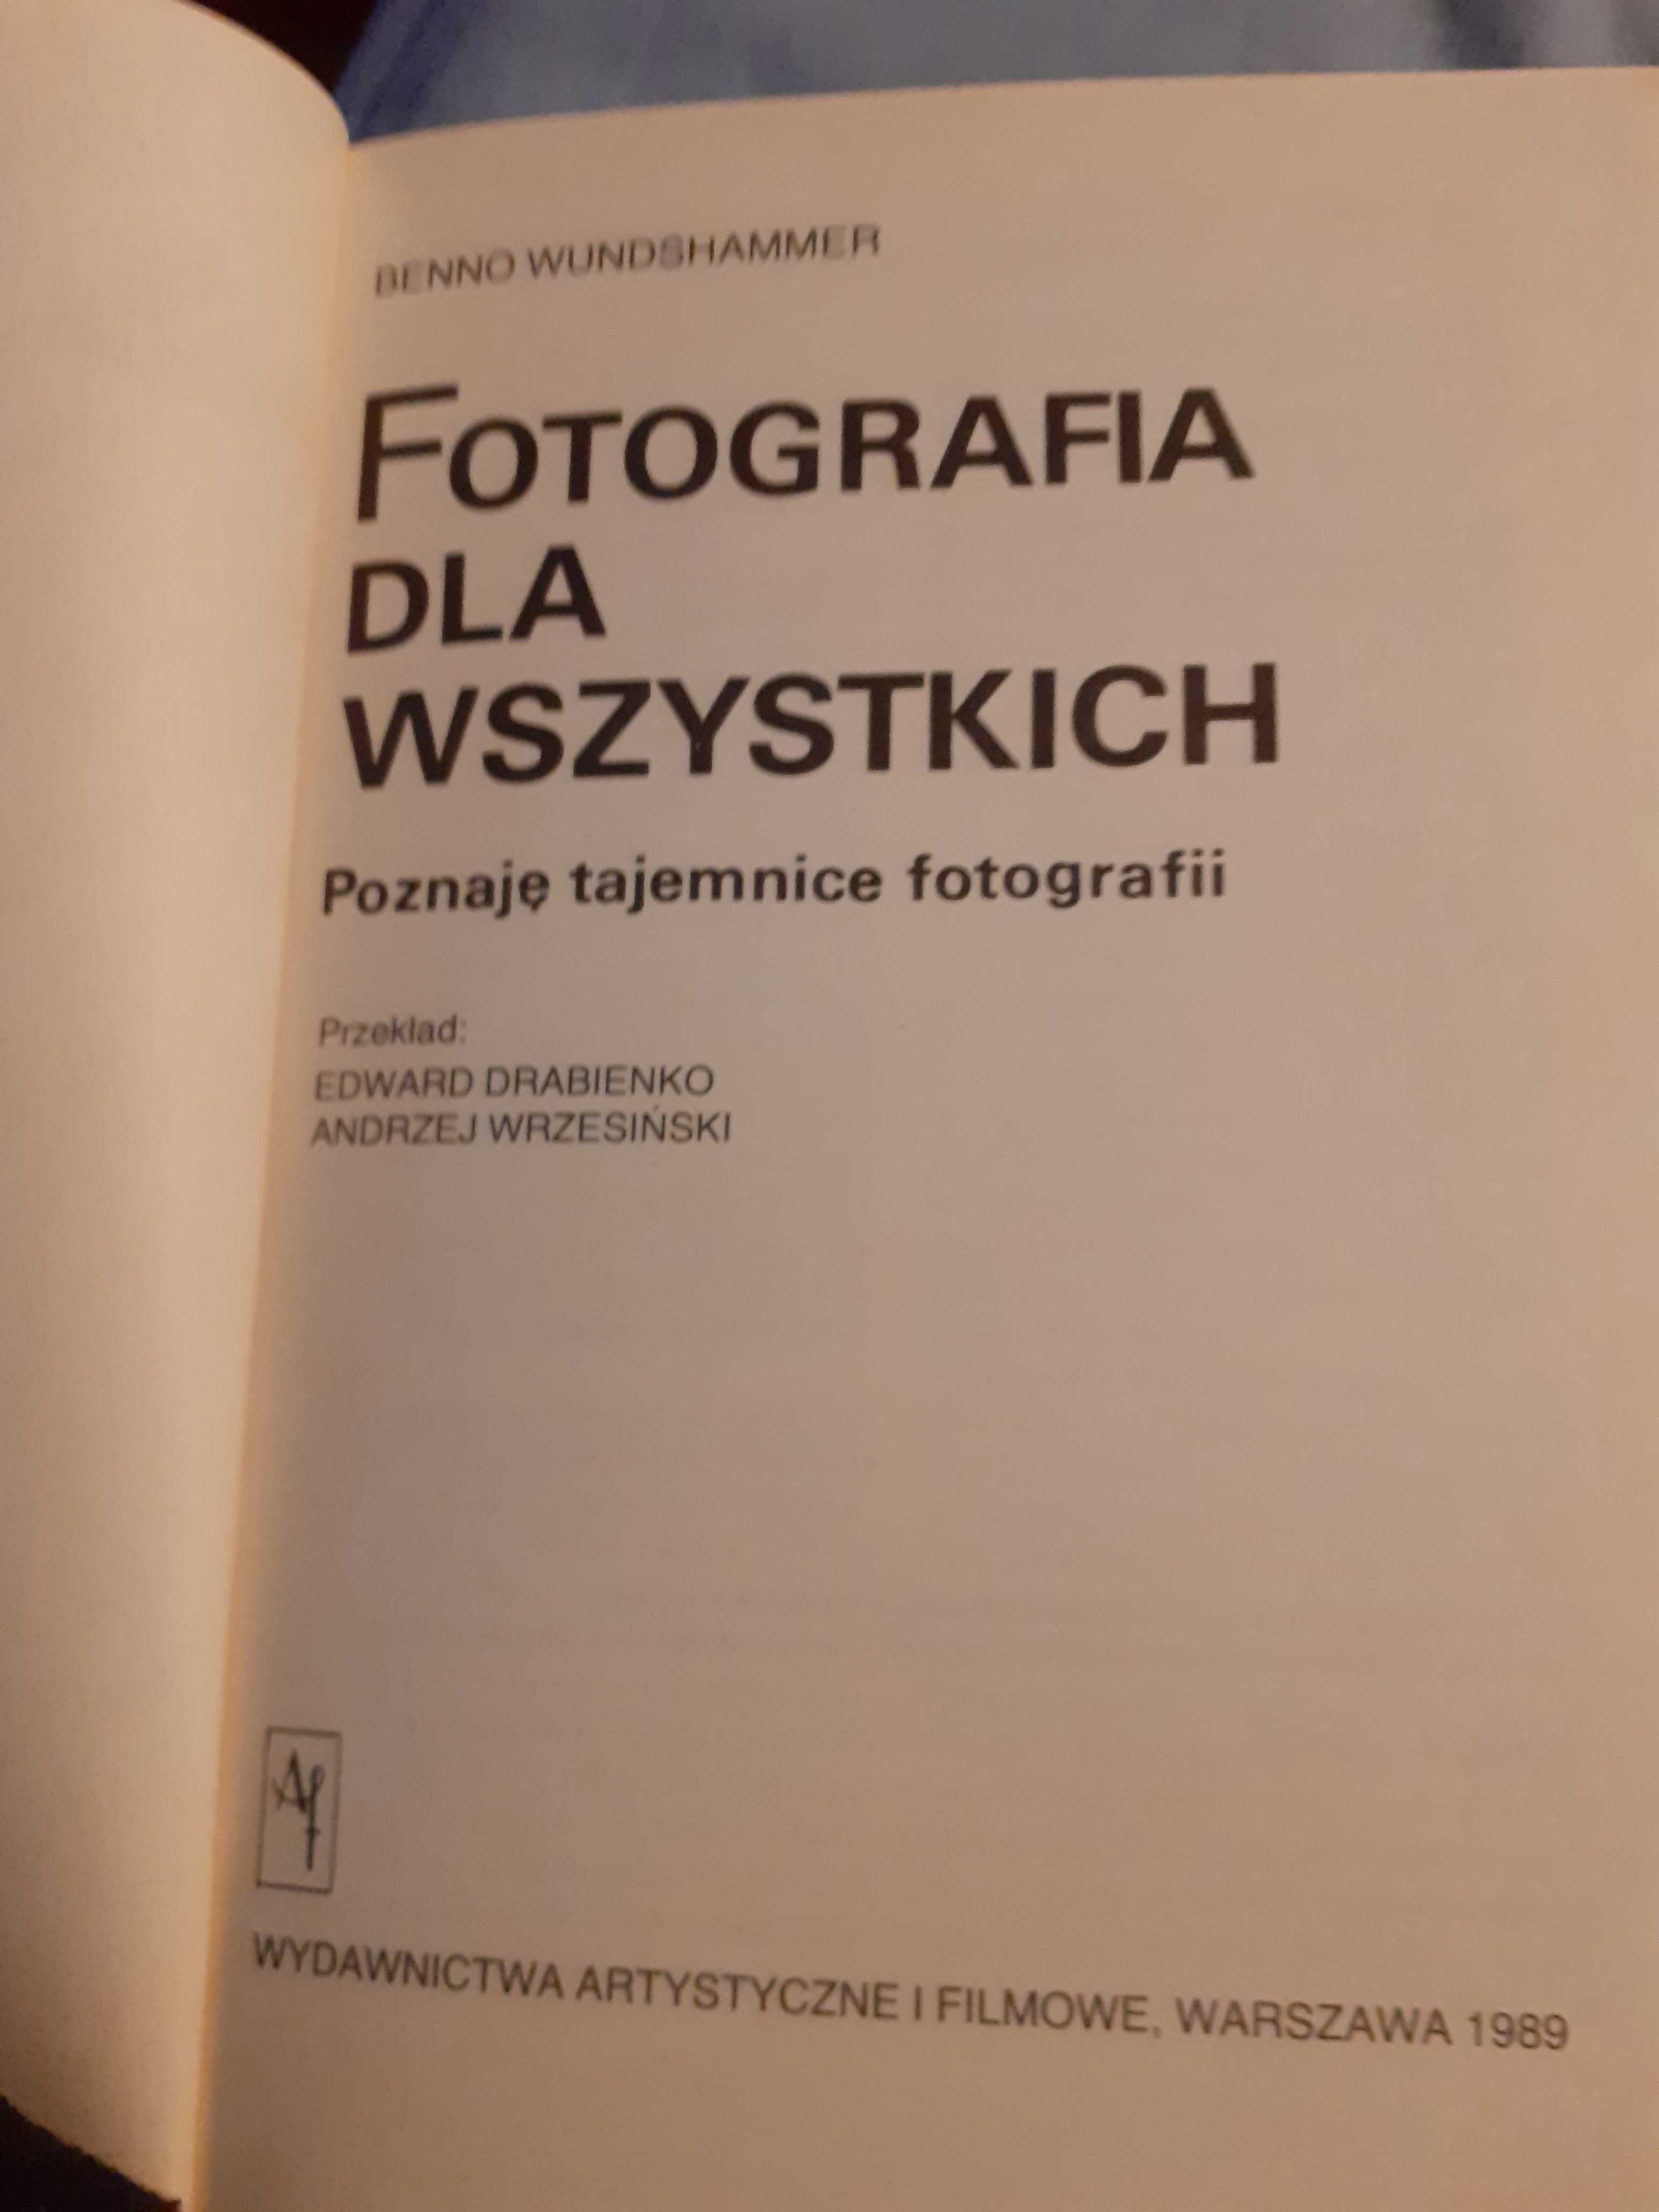 Książka "Fotografia dla wszystkich".